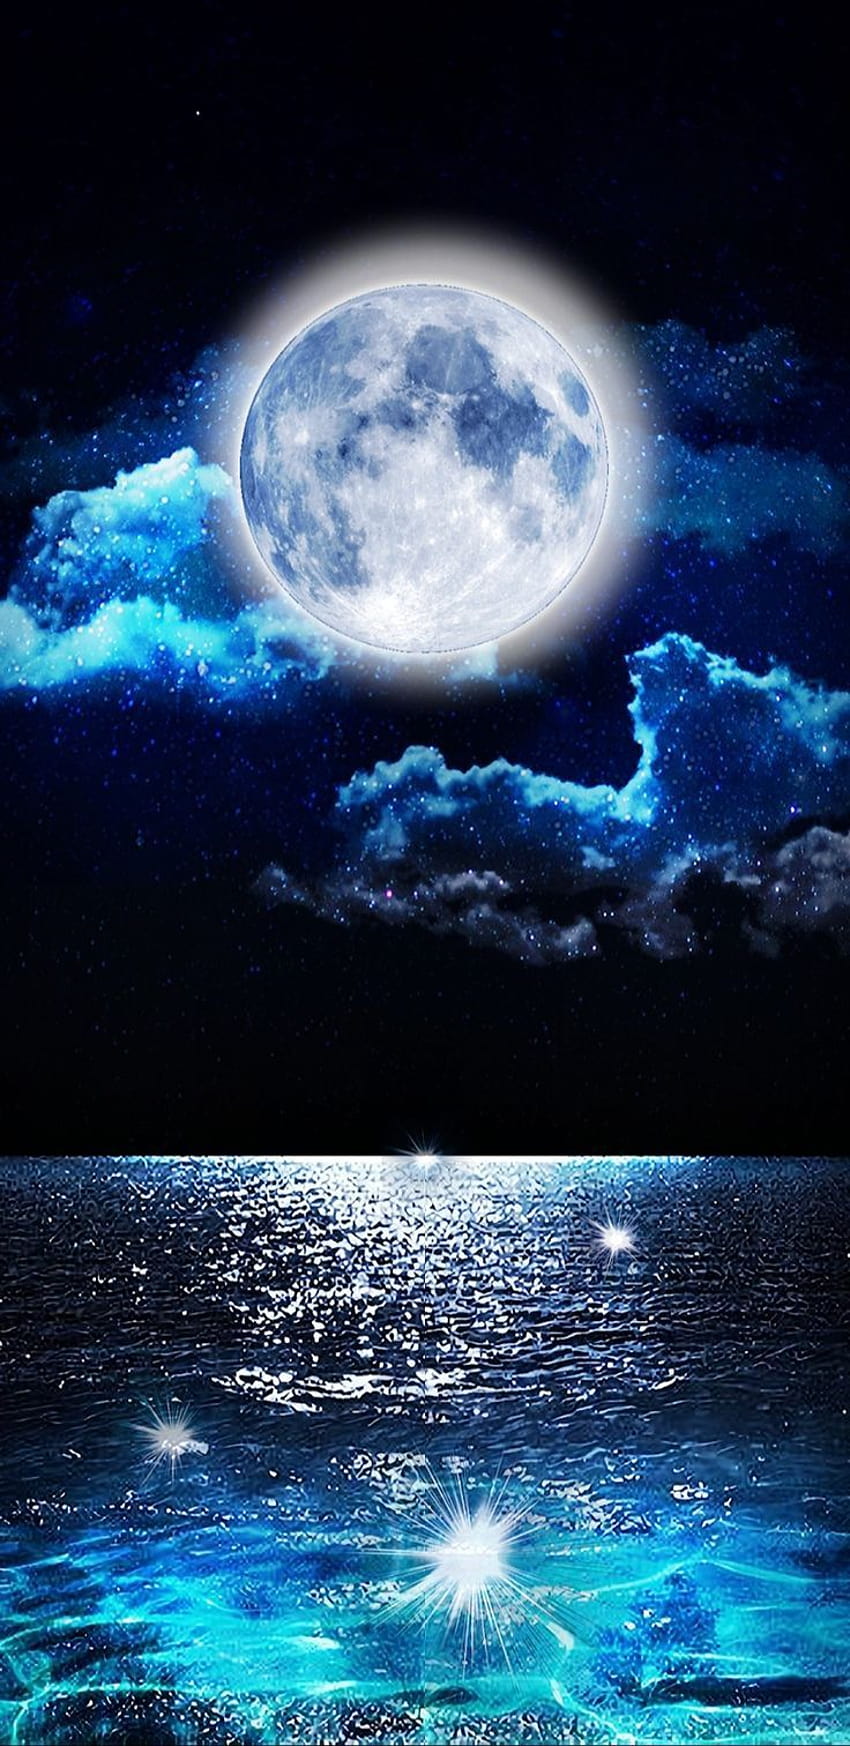 720P Free download | Moon magic celestial cosmic full ocean magical ...